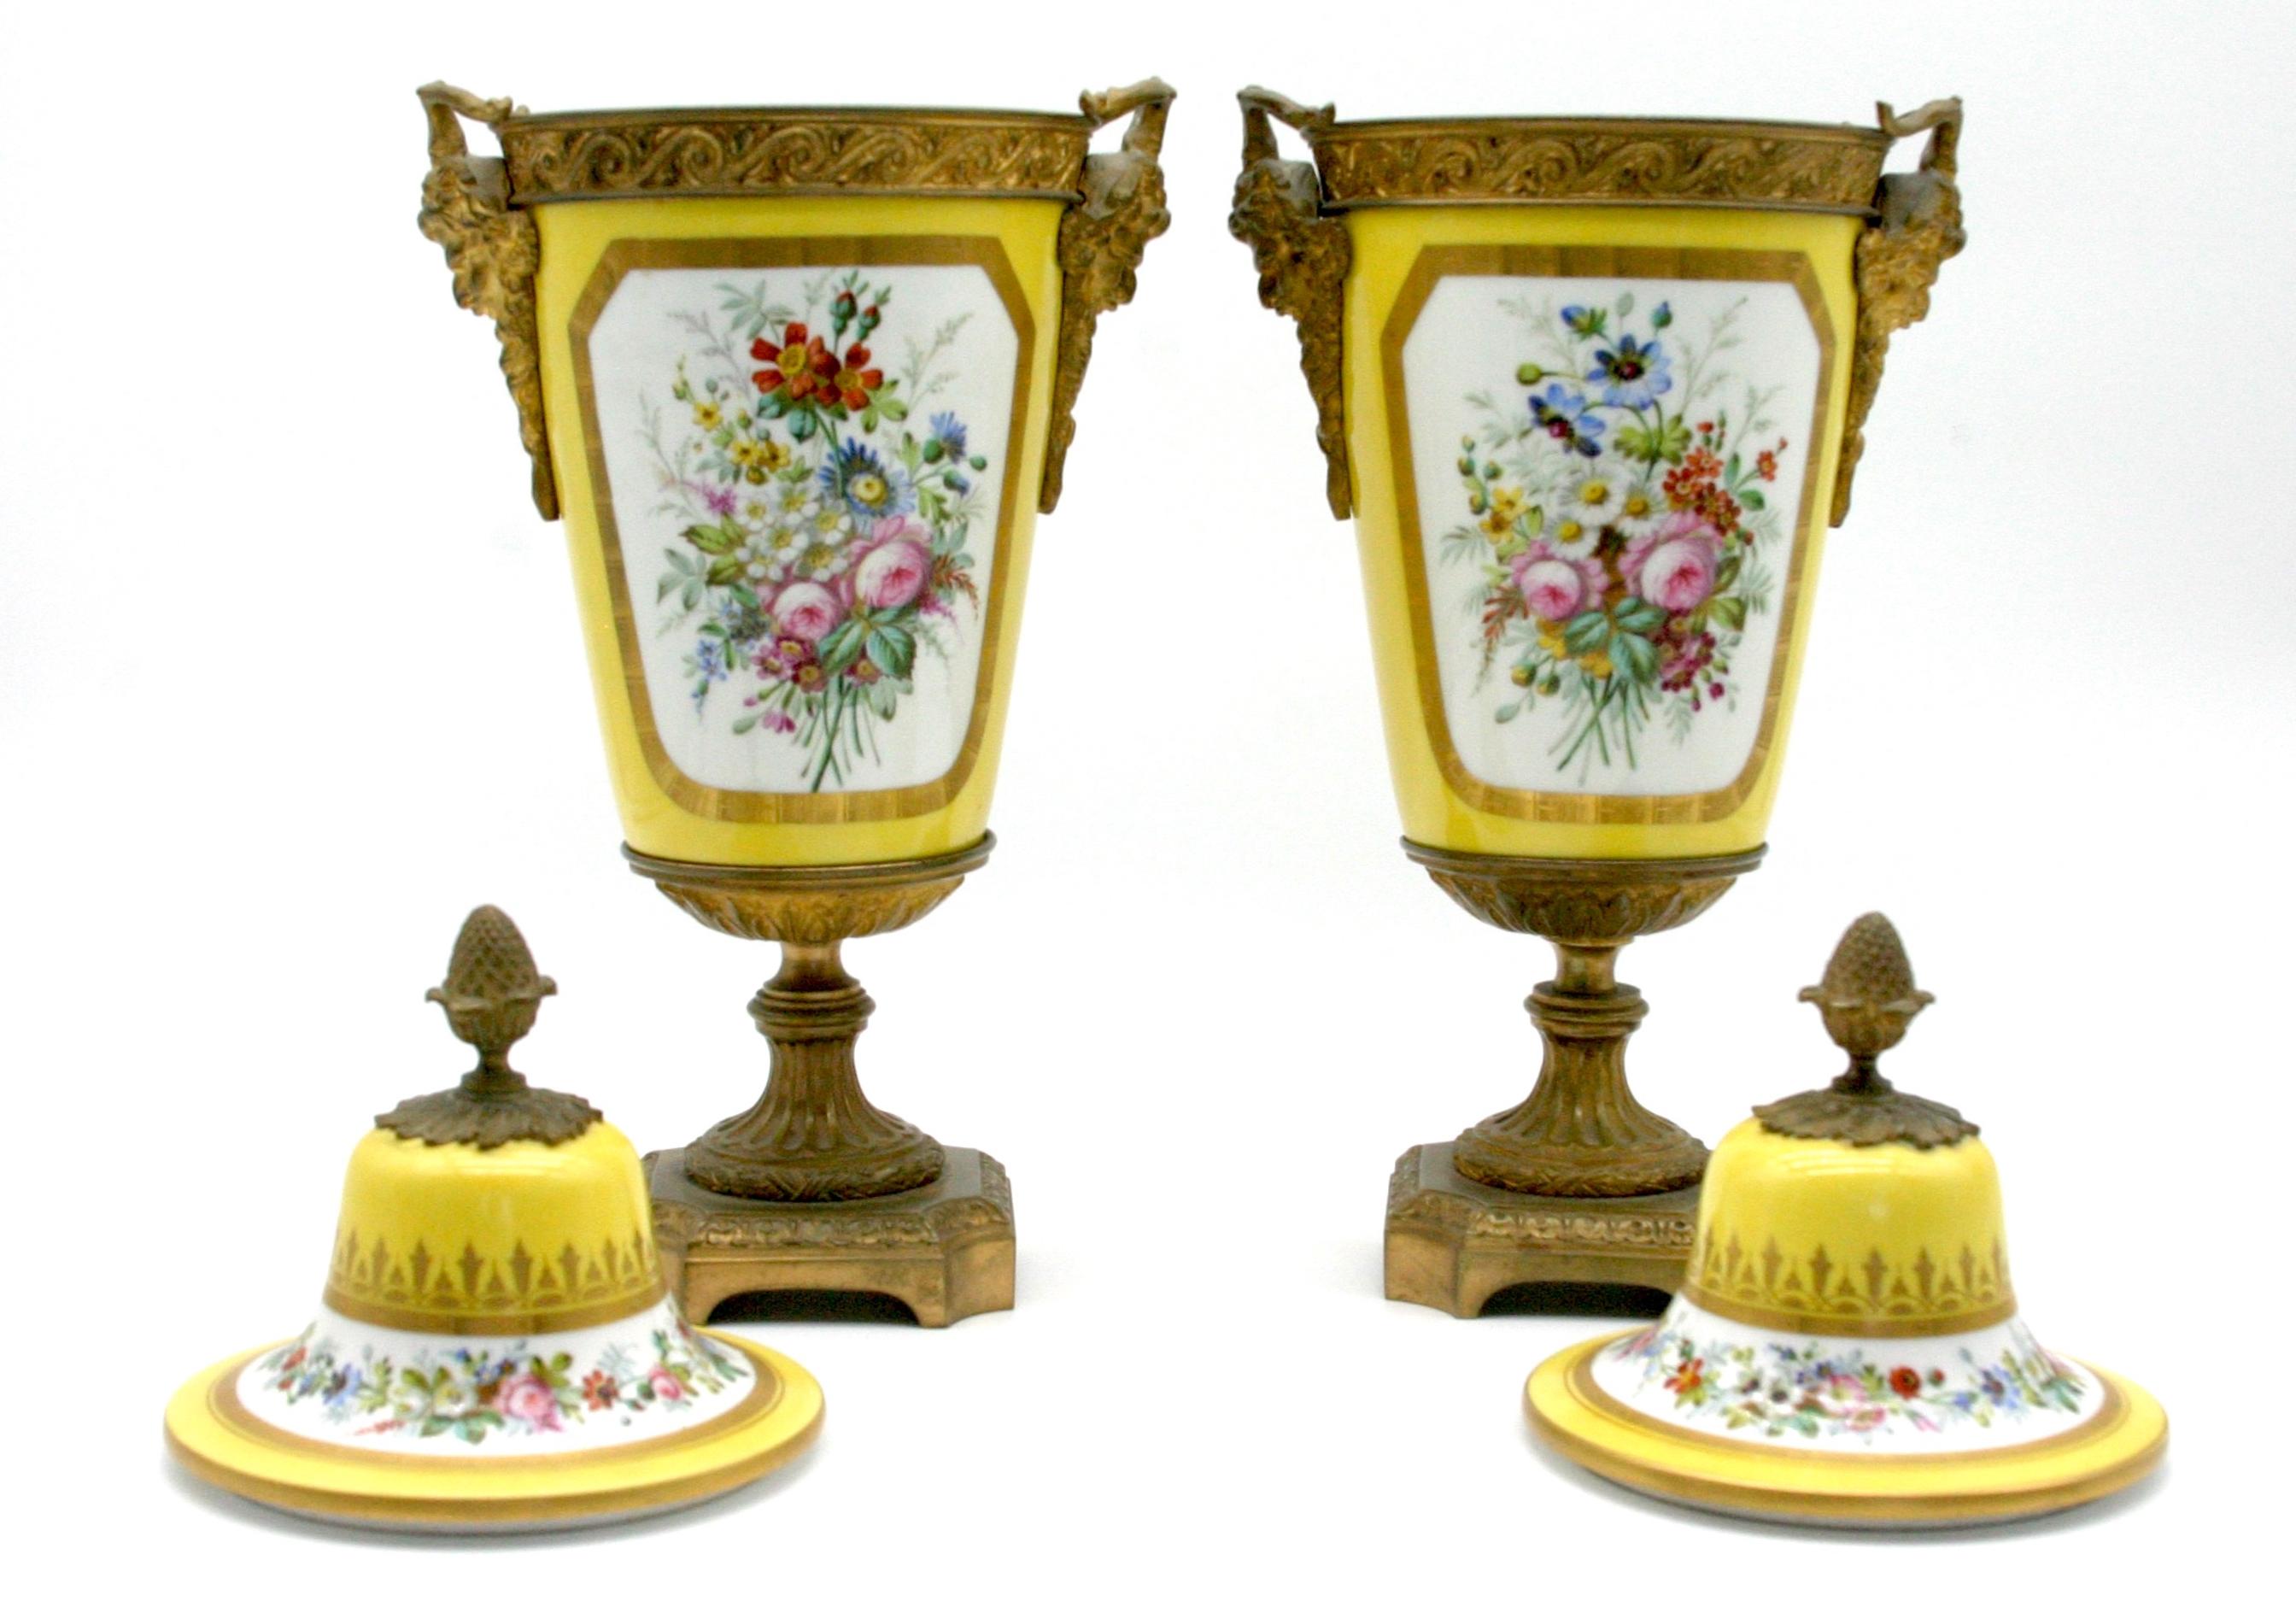 19. Jahrhundert Bronze montiert Paar Porzellan dekorative Urnen mit äußeren Hand gemalt romantische Szene und floralen Details. Künstlersignatur 